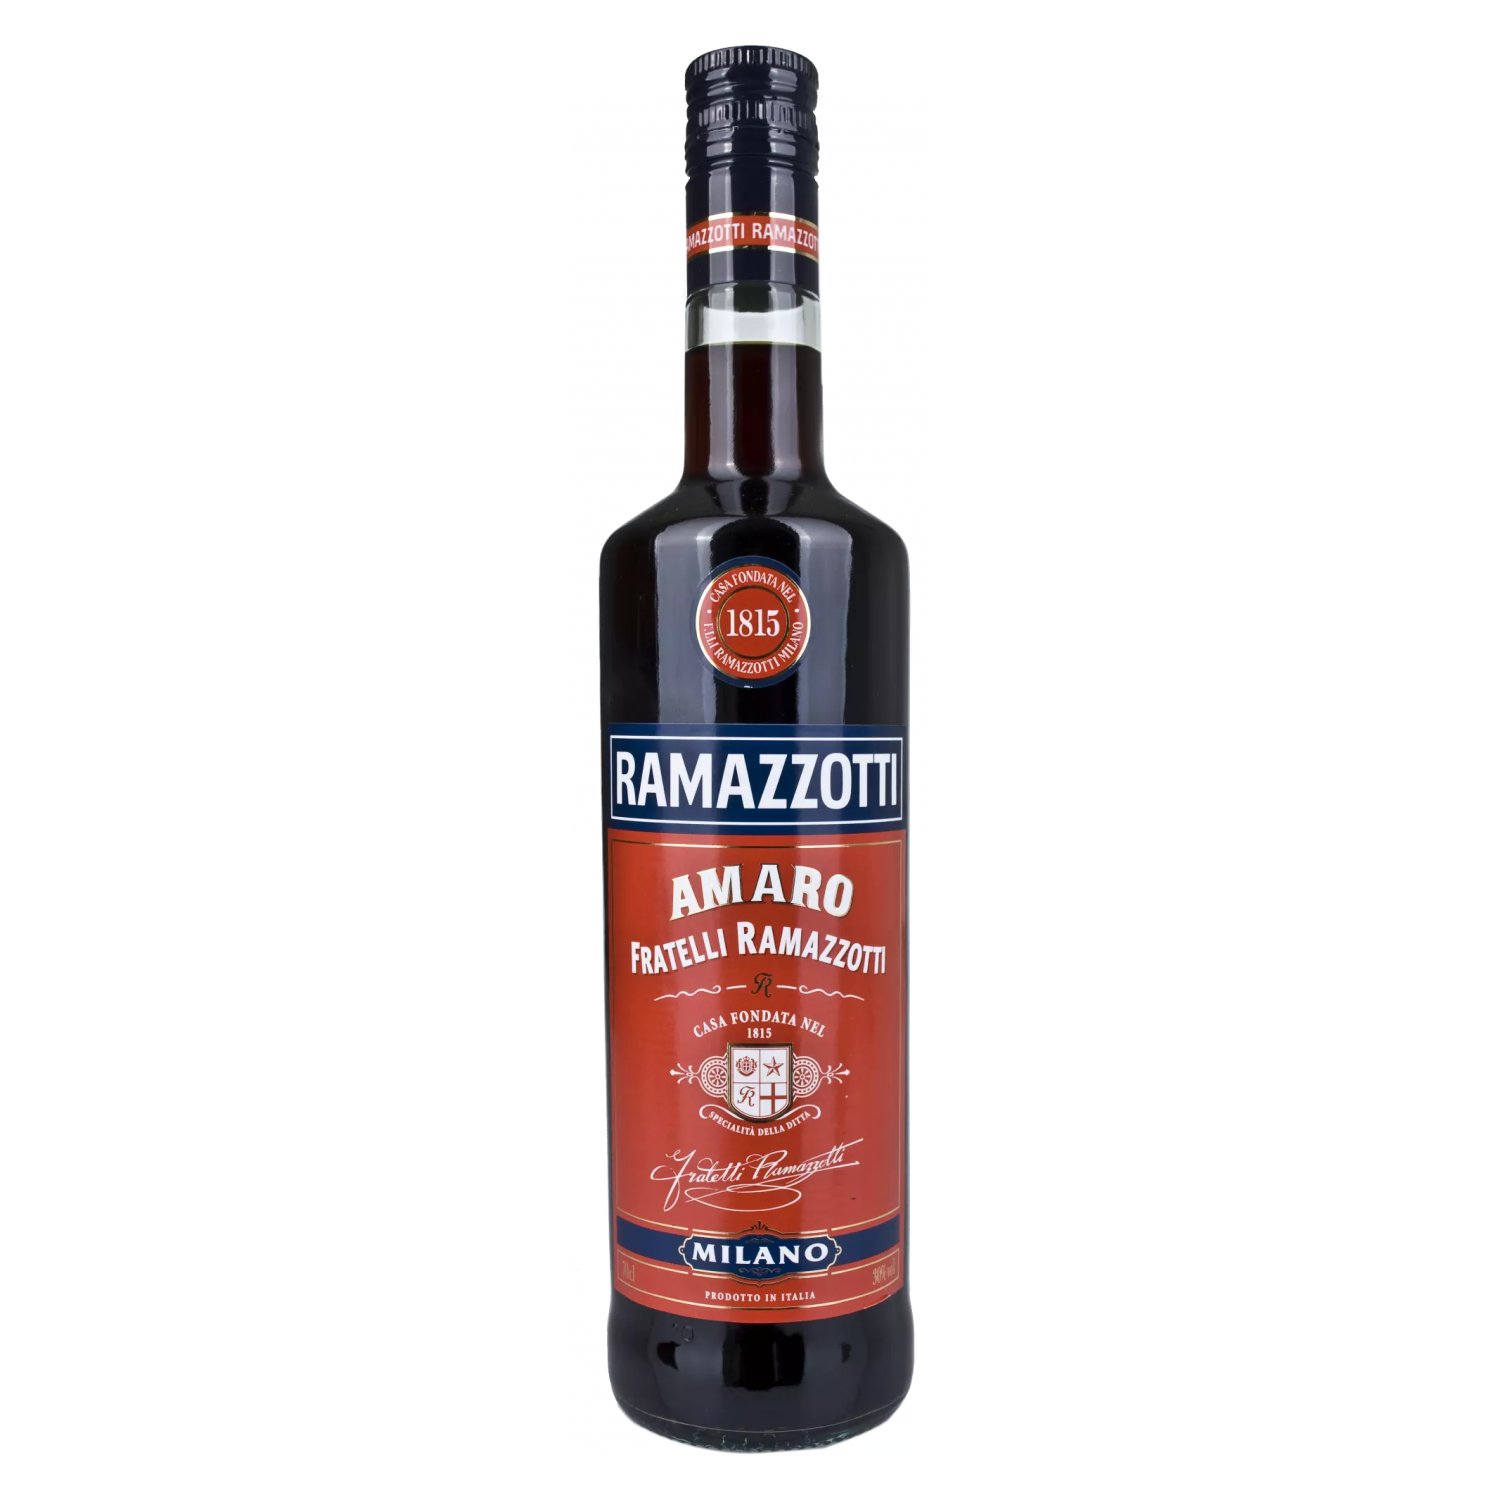 Ramazzotti Amaro delicando 0,7l 30% Vol. 